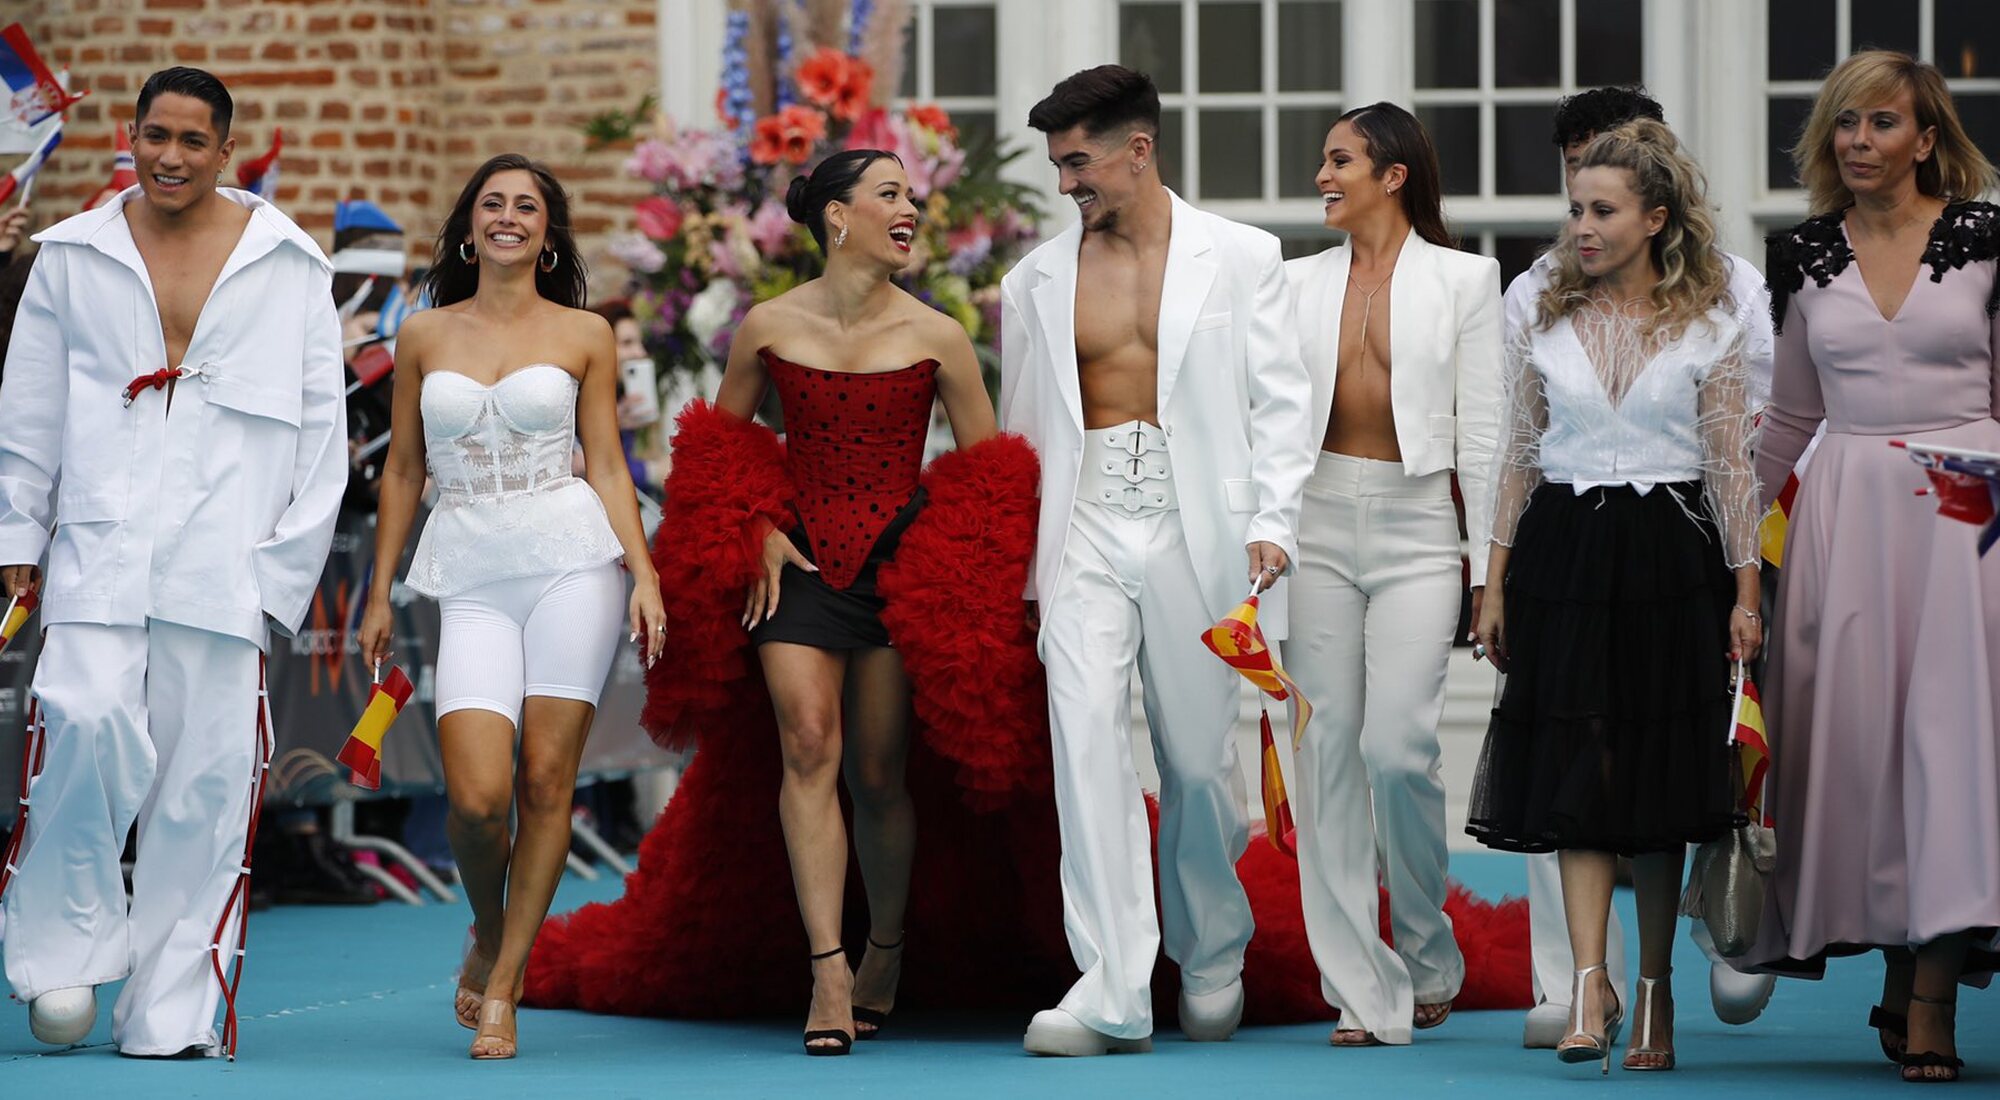 Chanel recorre la alfombra turquesa de la ceremonia de apertura de Eurovisión 2022 con sus bailarines